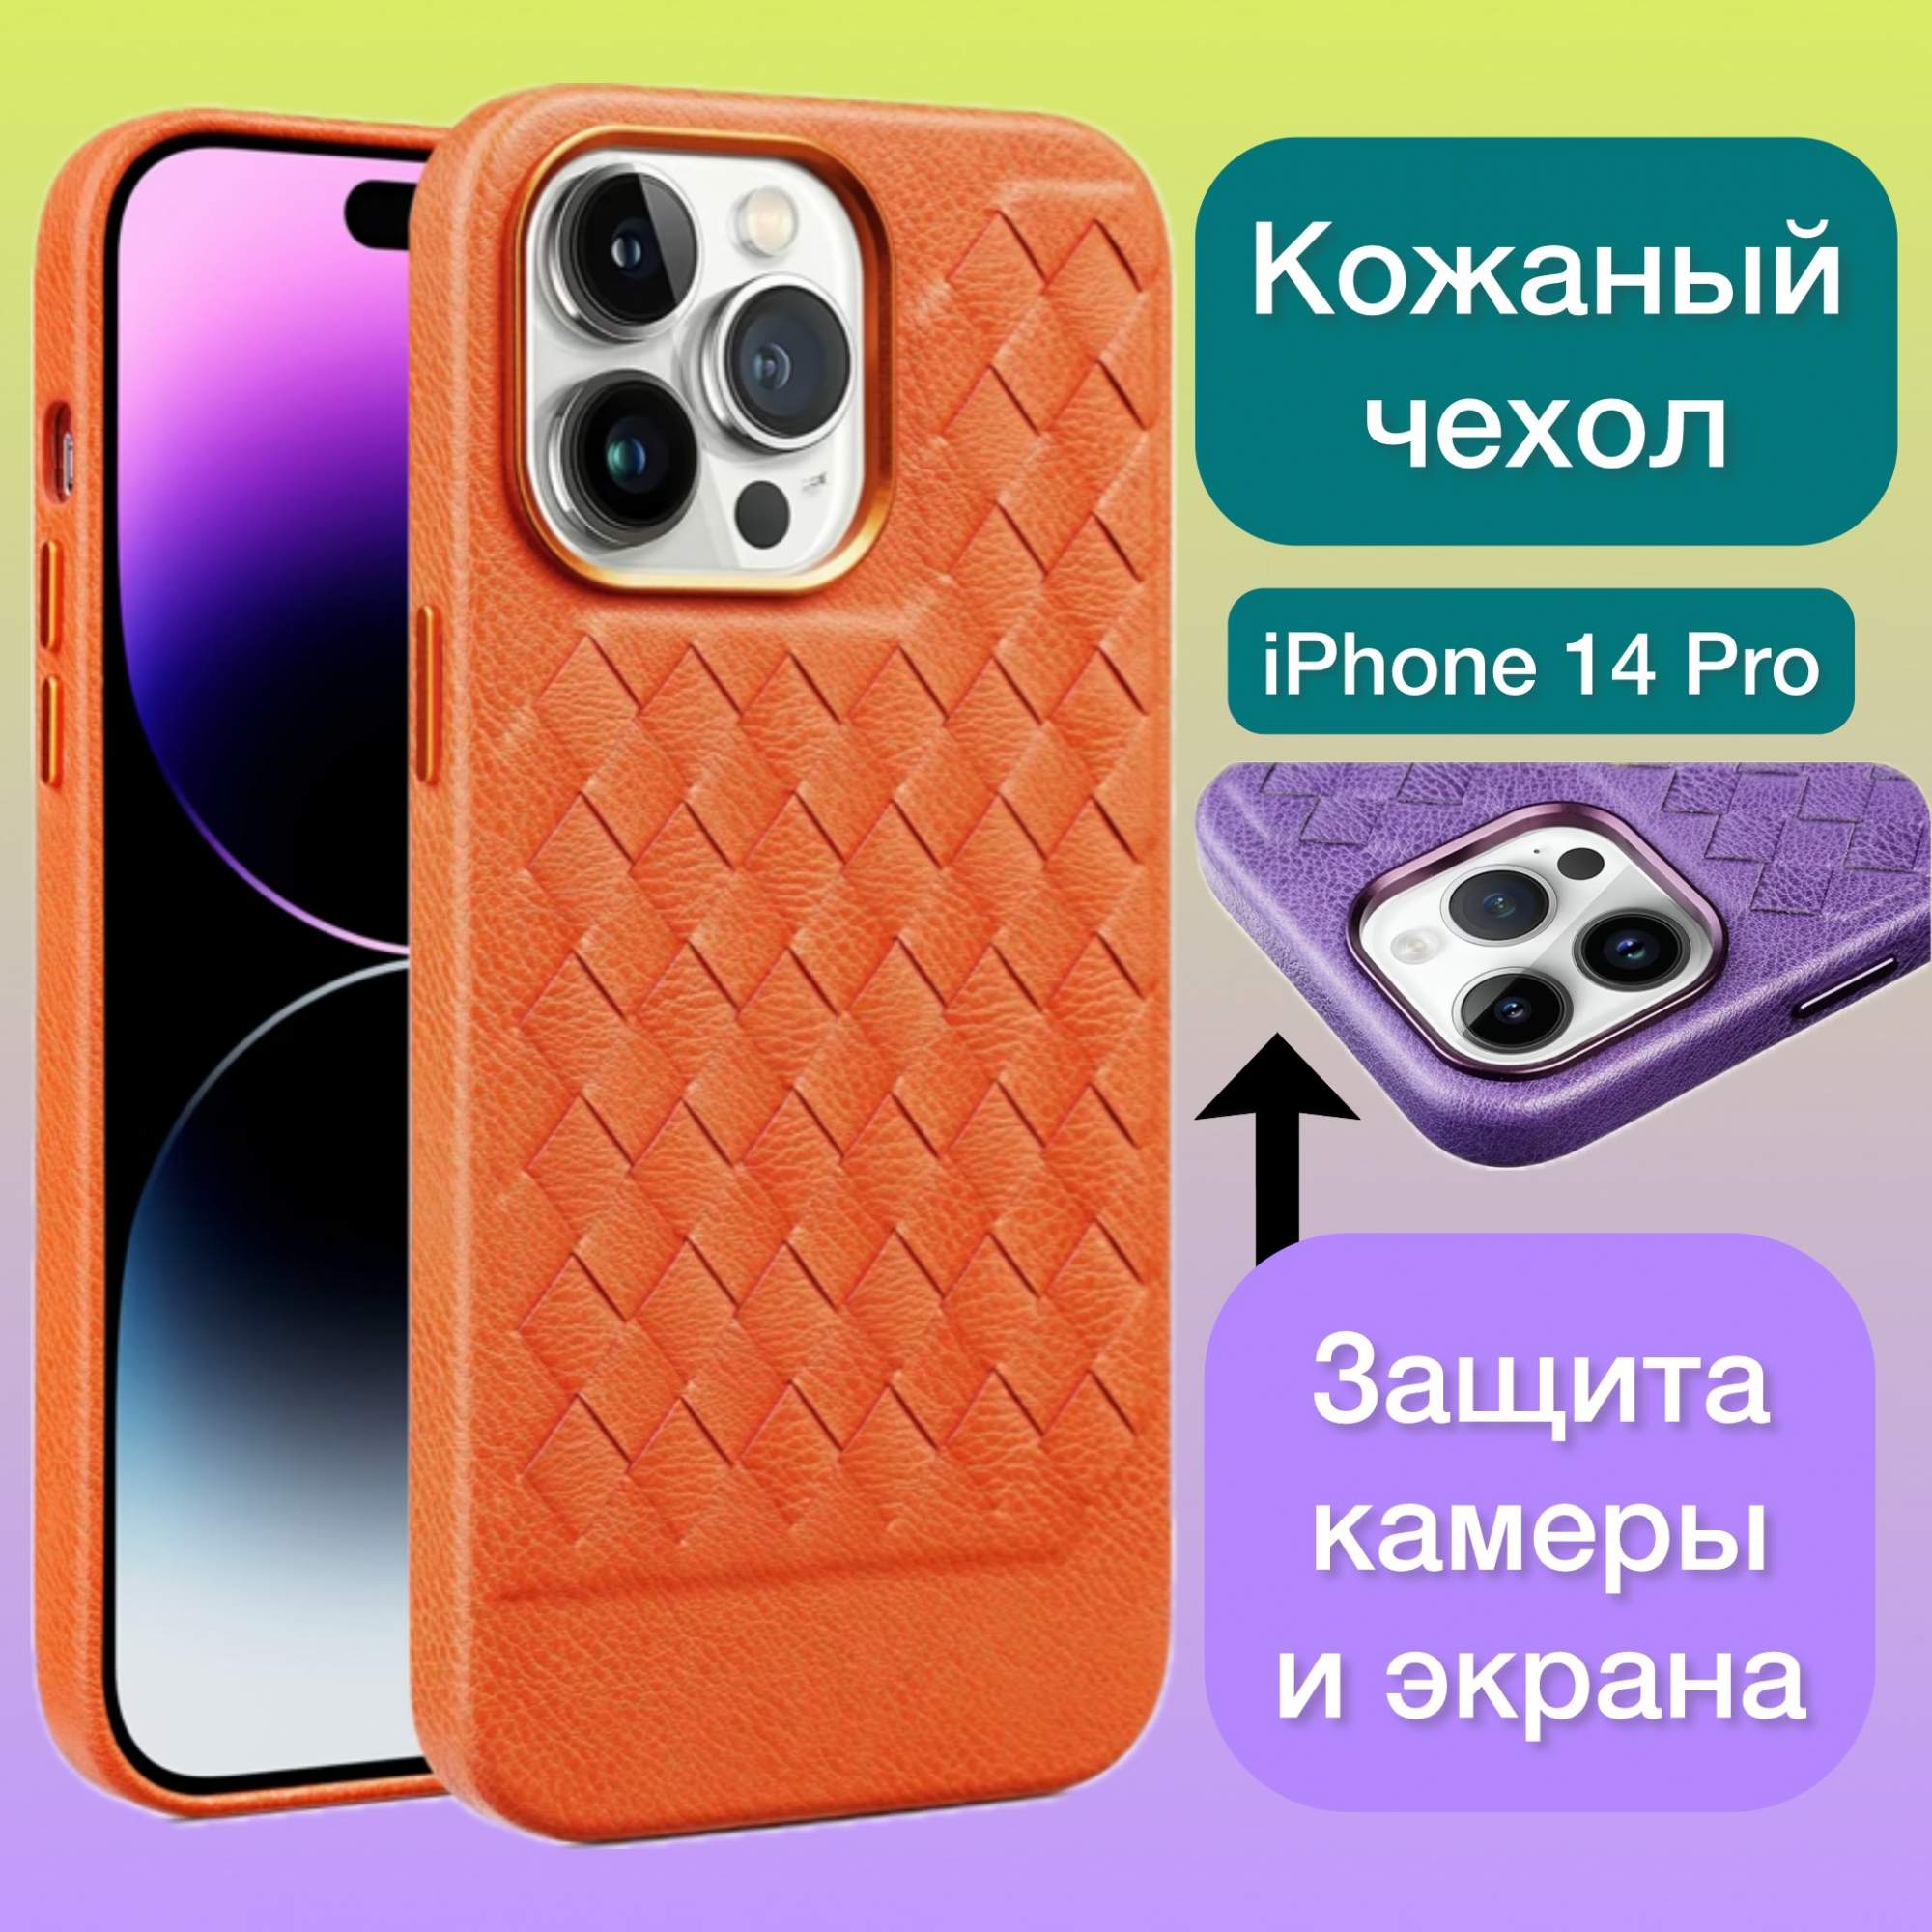 Кожаный чехол на iPhone 14 Pro плетеный Aimo для Айфон 14 Про цвет коричневый